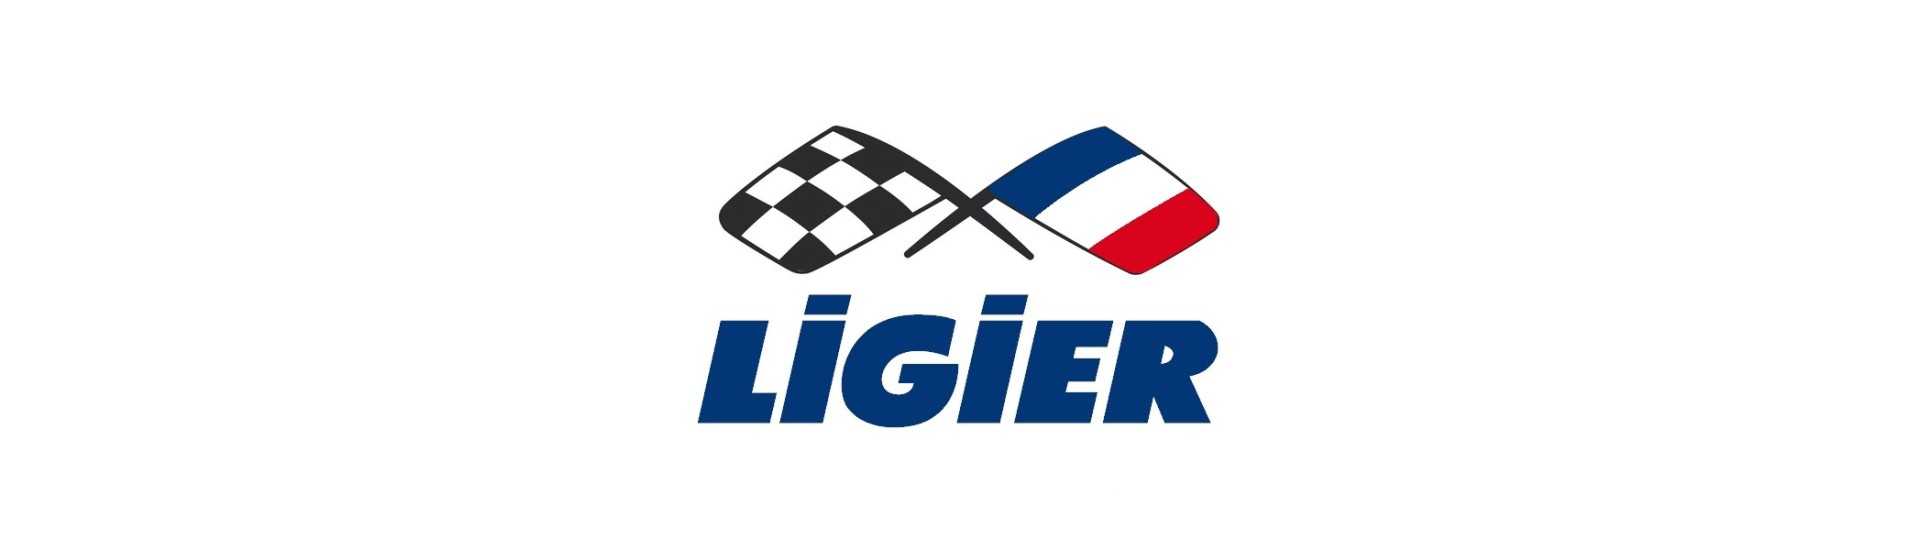 Torneira de aquecimento ao melhor preço para o carro sem uma permissão Ligier